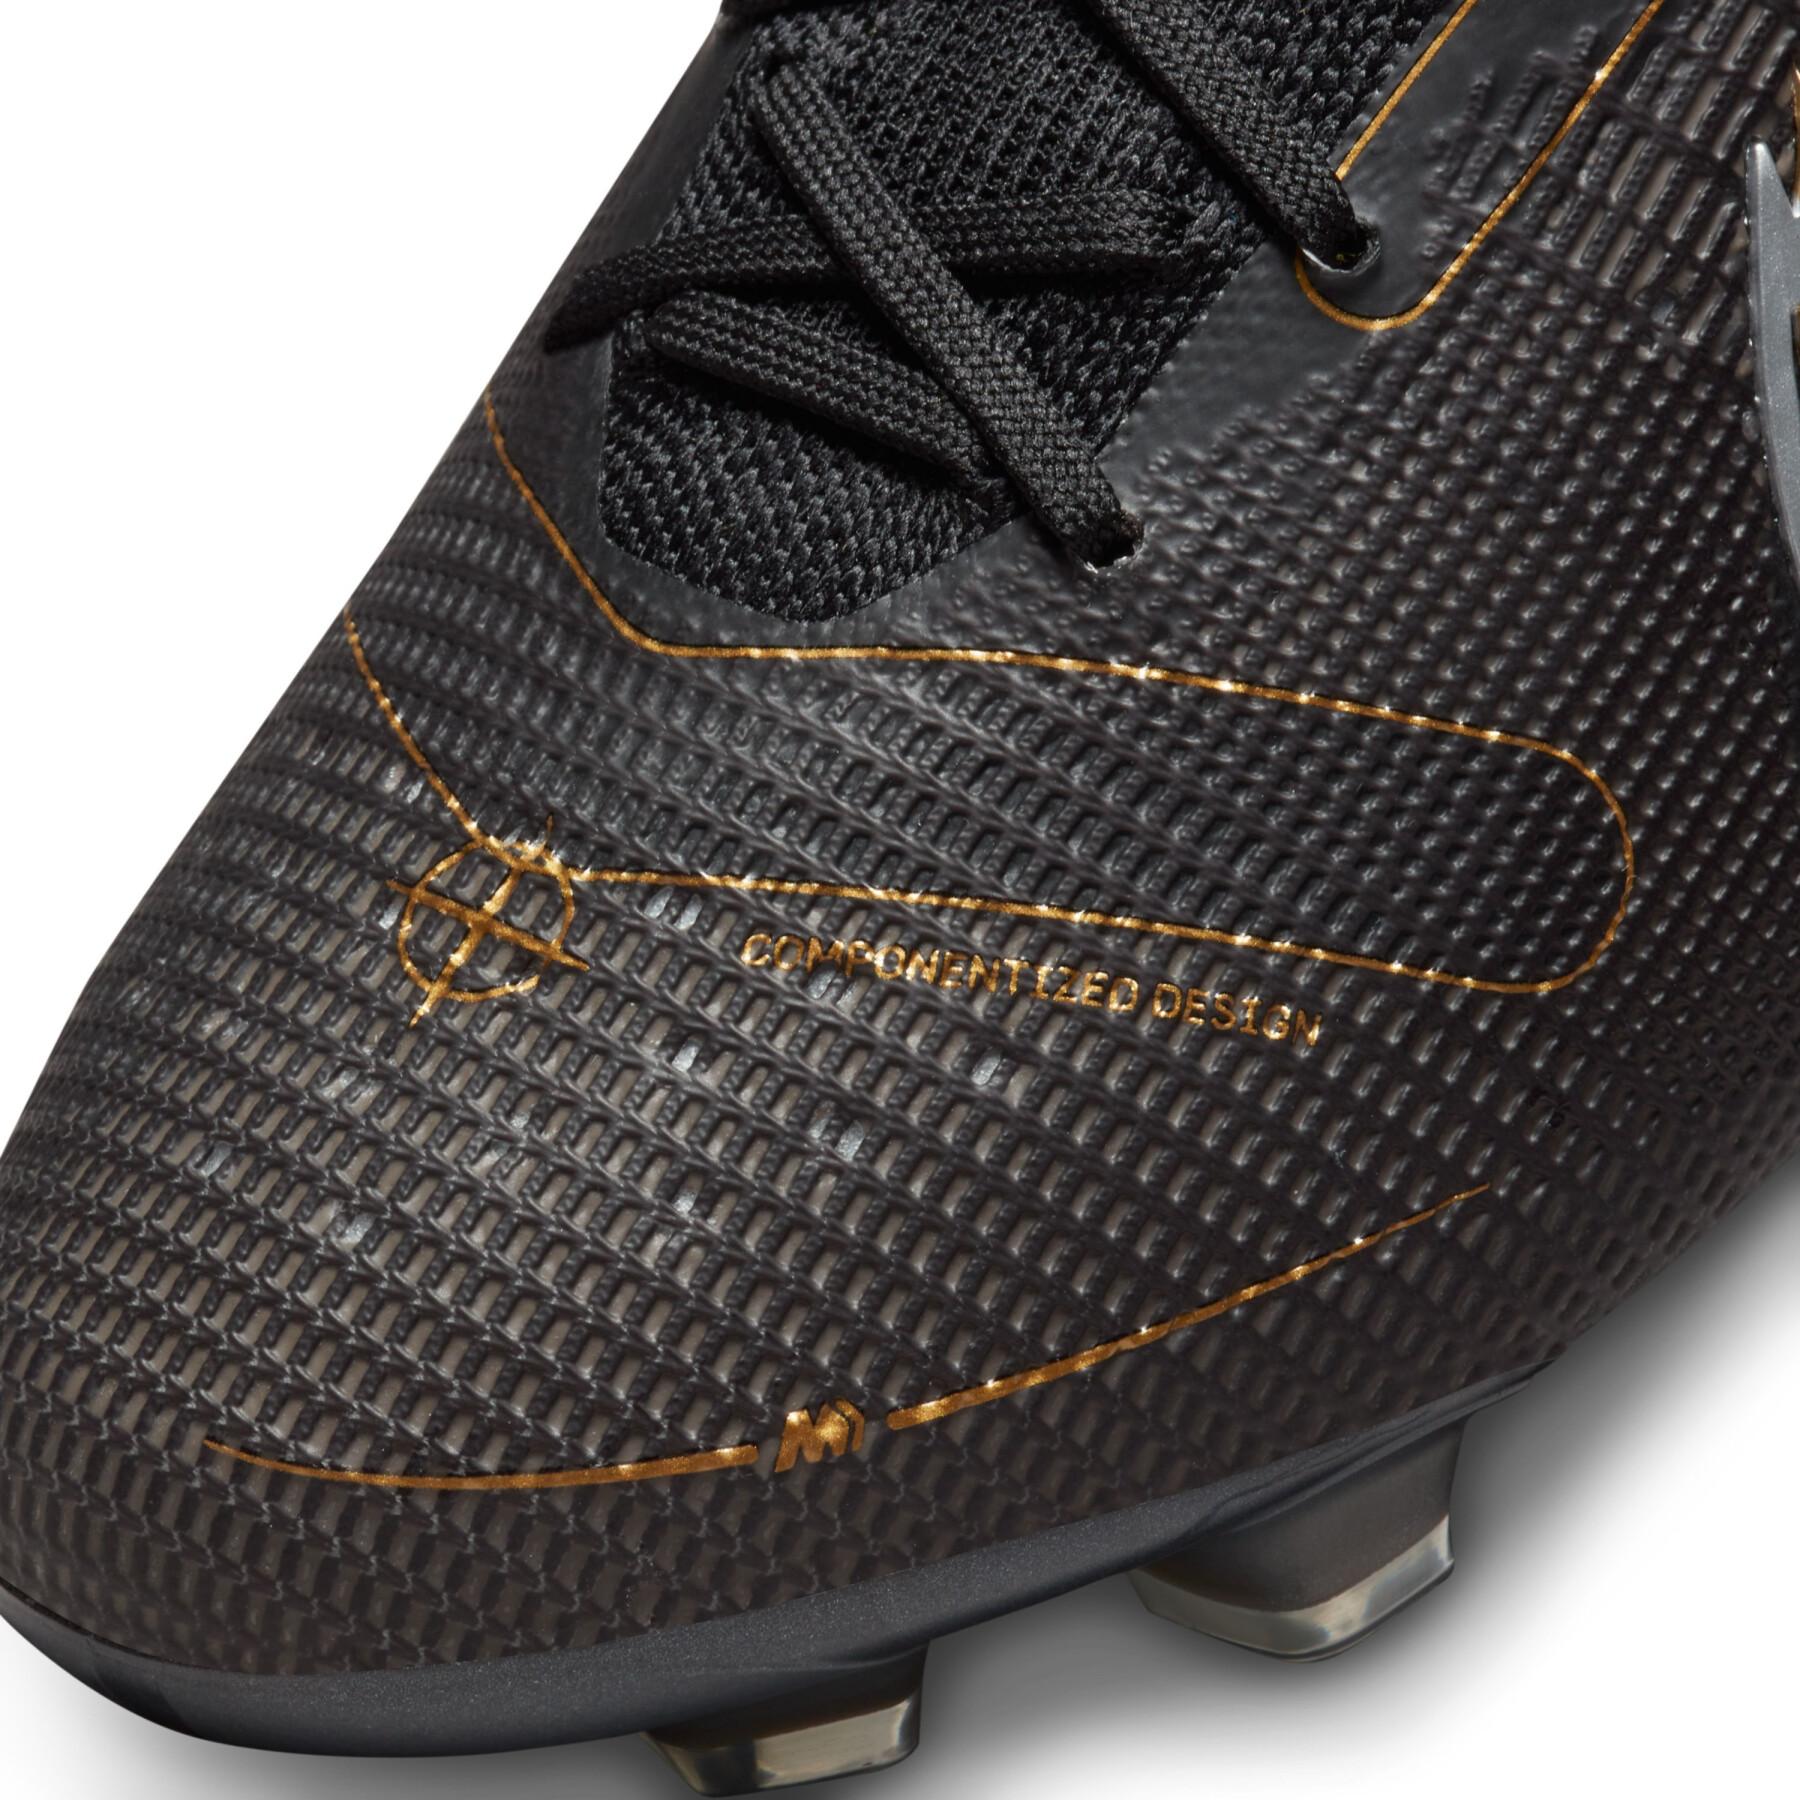 Scarpe da calcio Nike Mercurial Superfly 8 Élite FG - Shadow pack